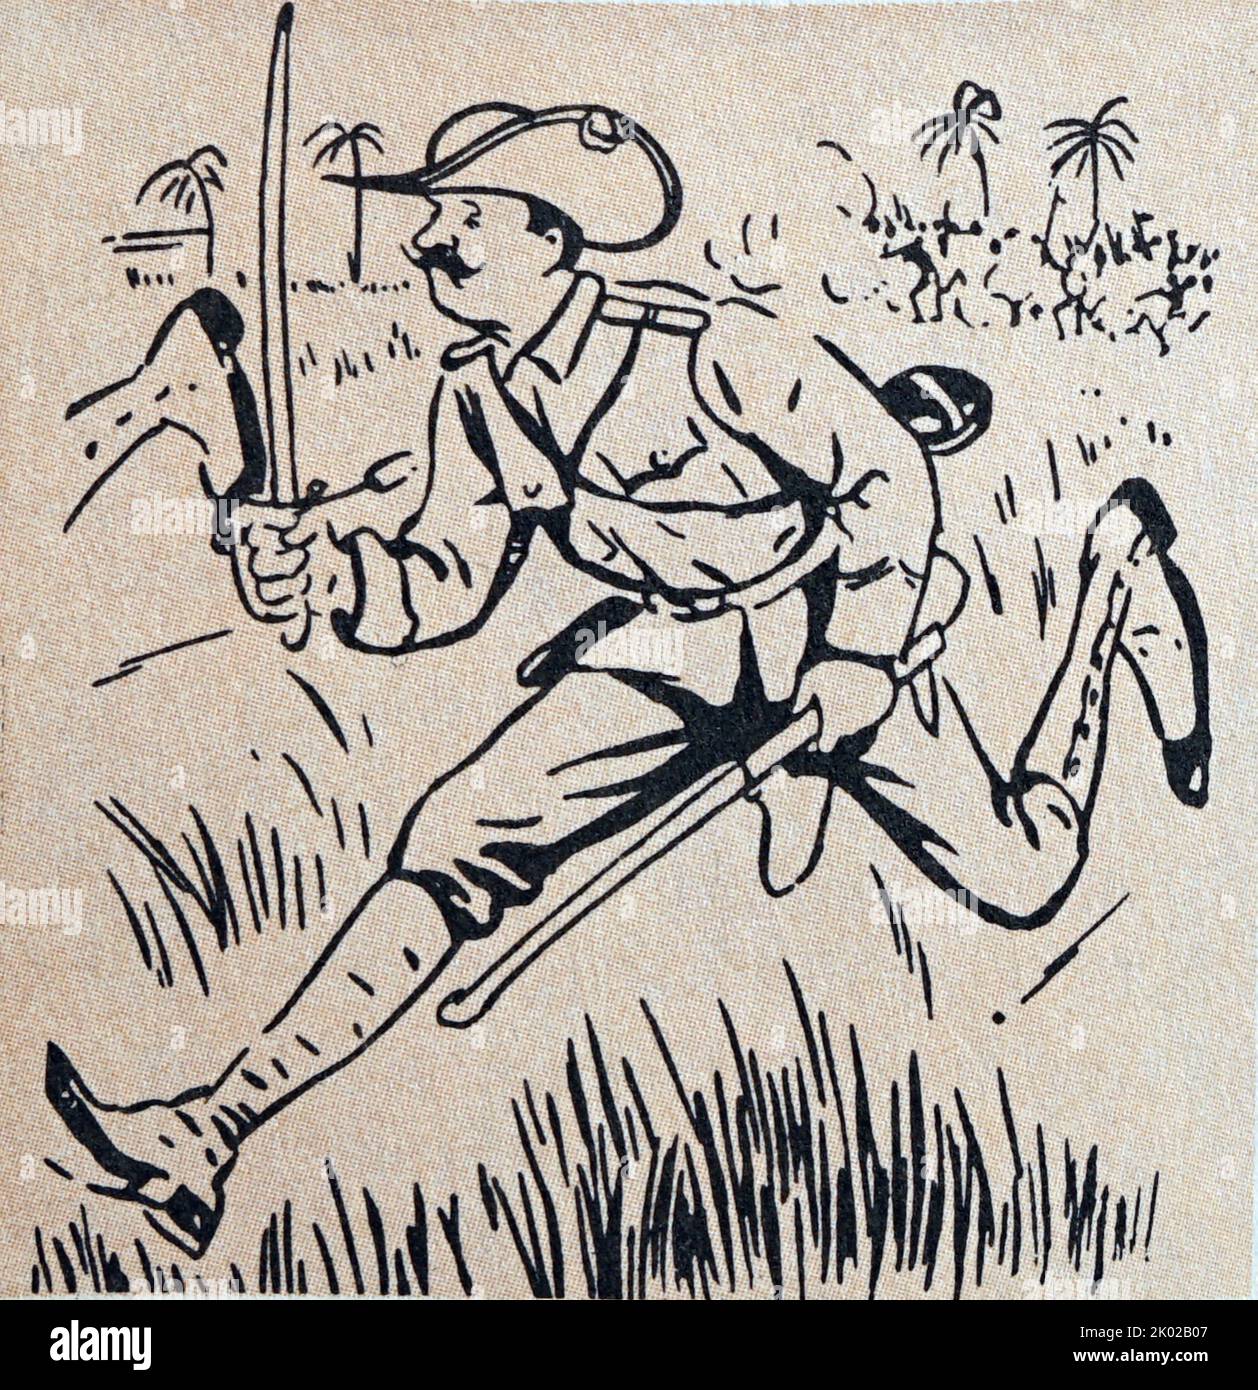 German Kaiser, Wilhelm II flees African rebels. Caricature. 1900 Stock Photo